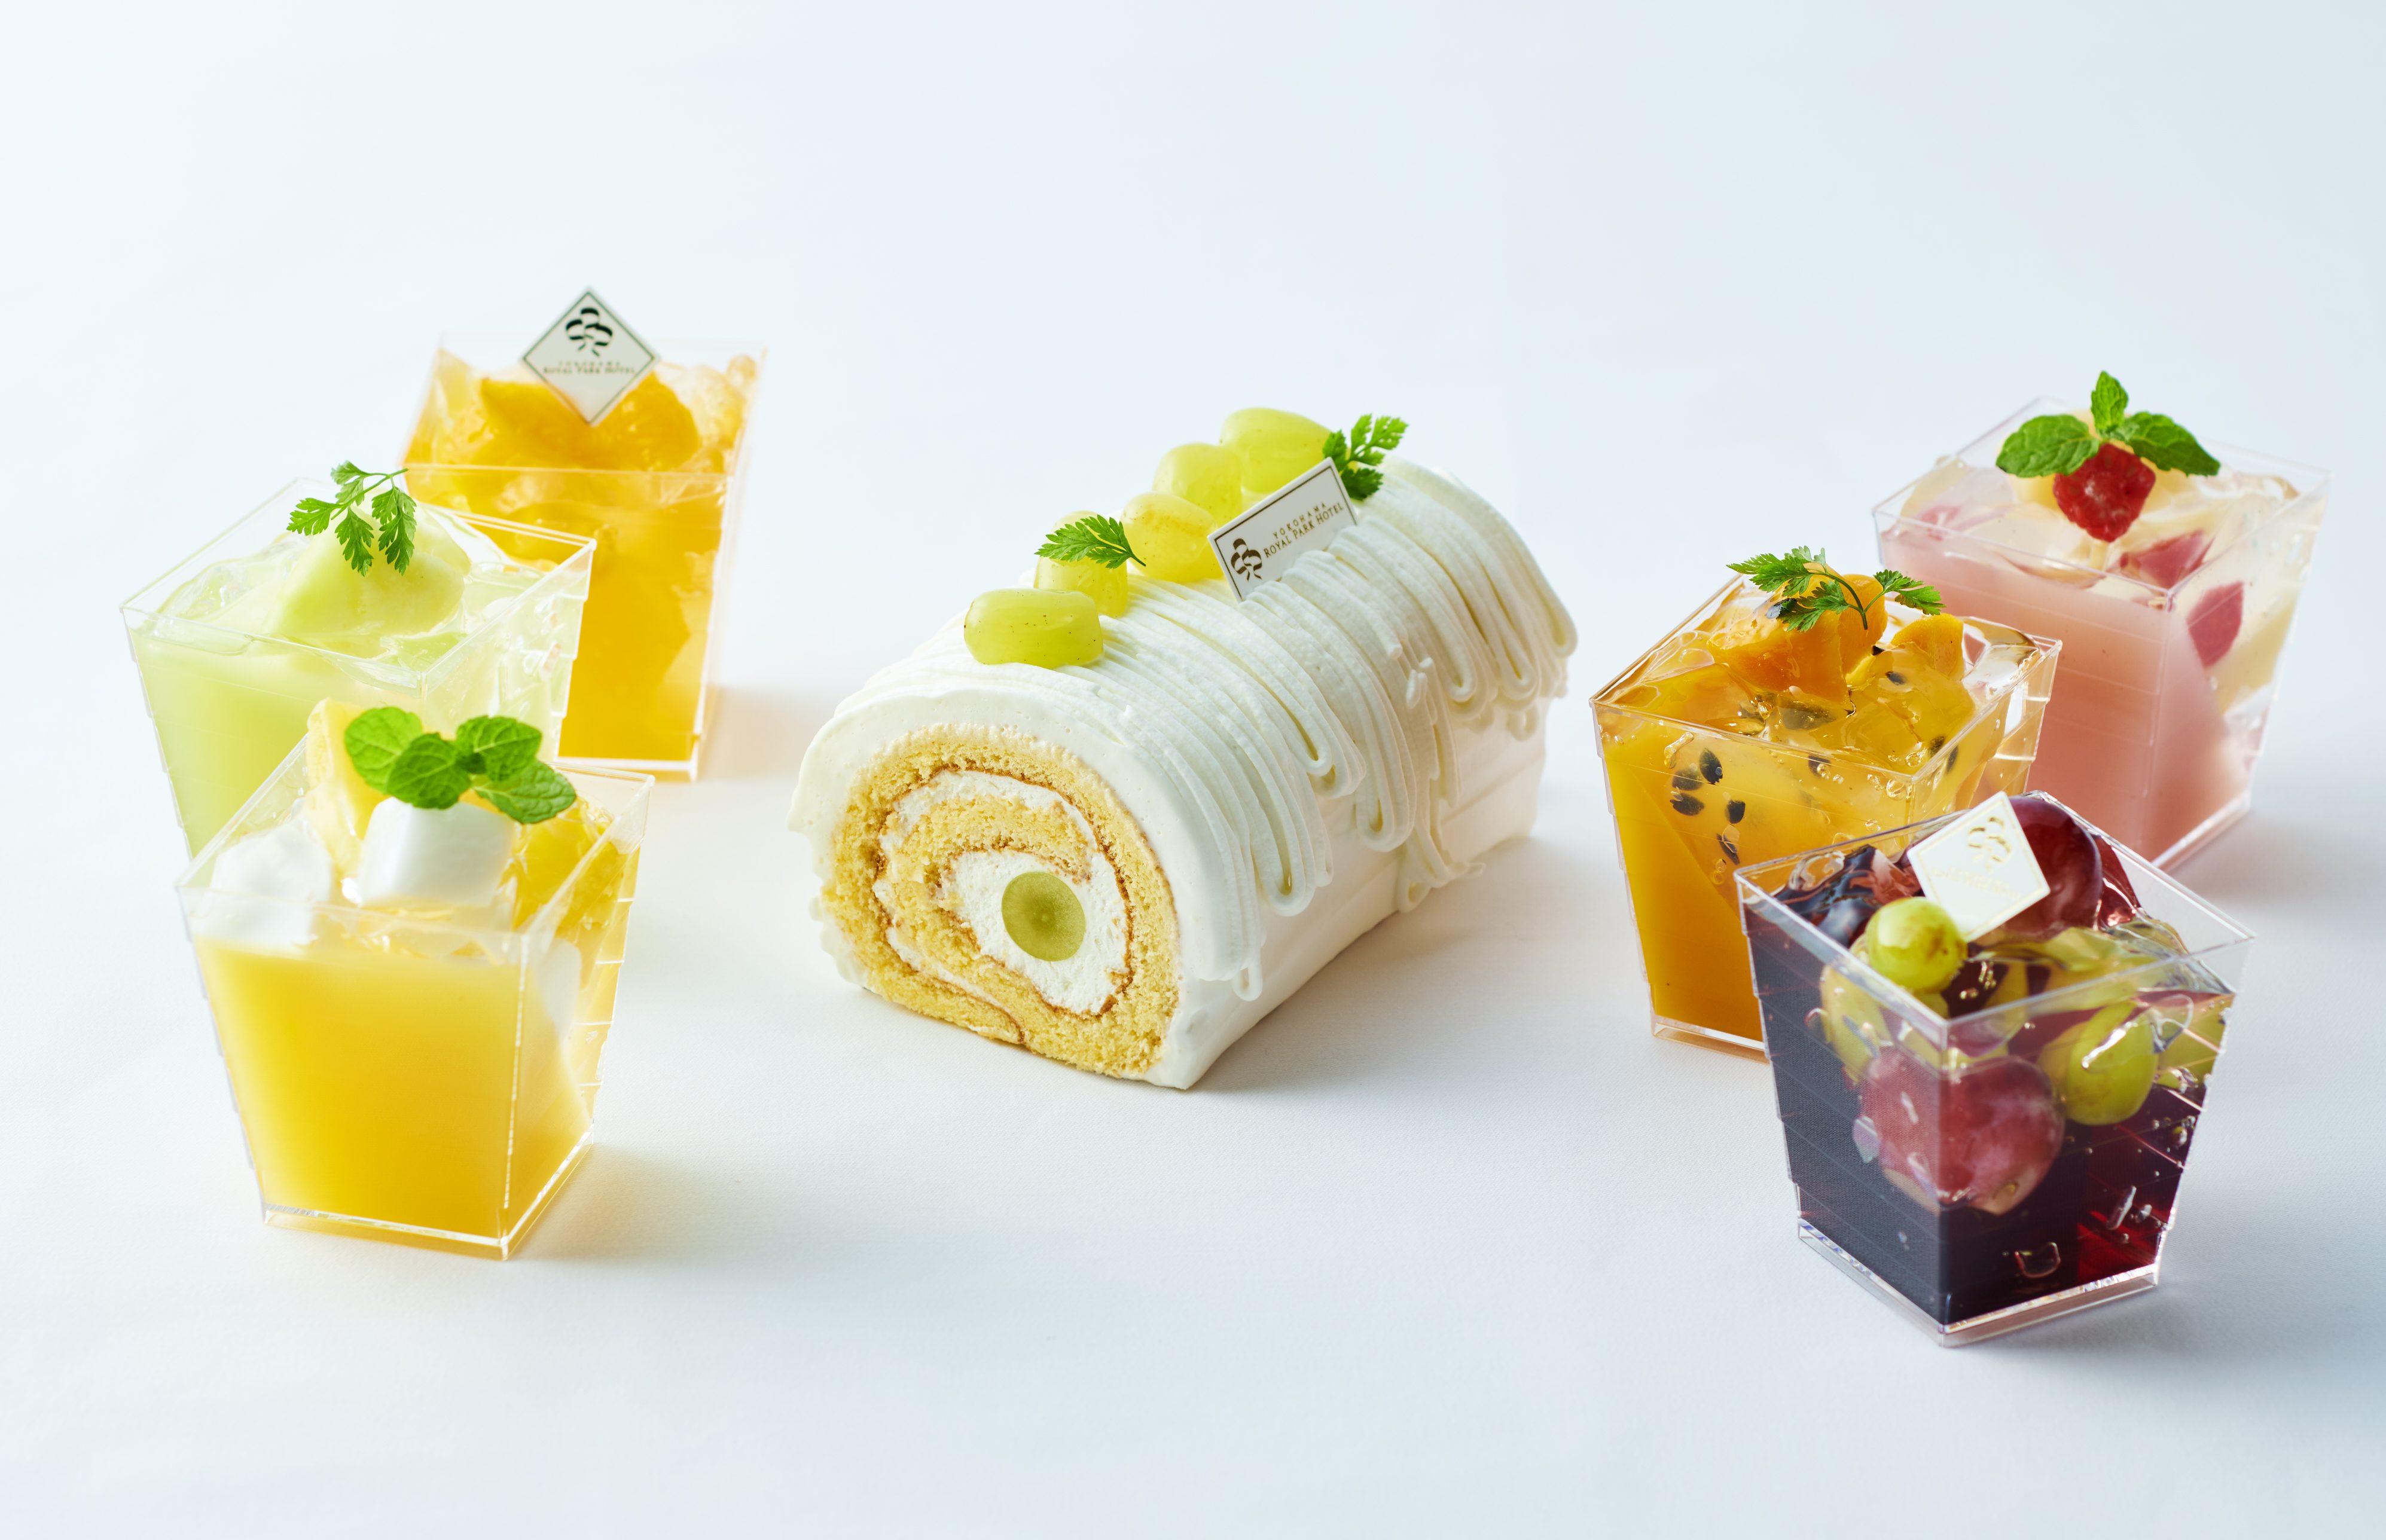 横浜ロイヤルパークホテル シャインマスカットを使ったロールケーキが今年も登場 サマースイーツフェア Fish Tips